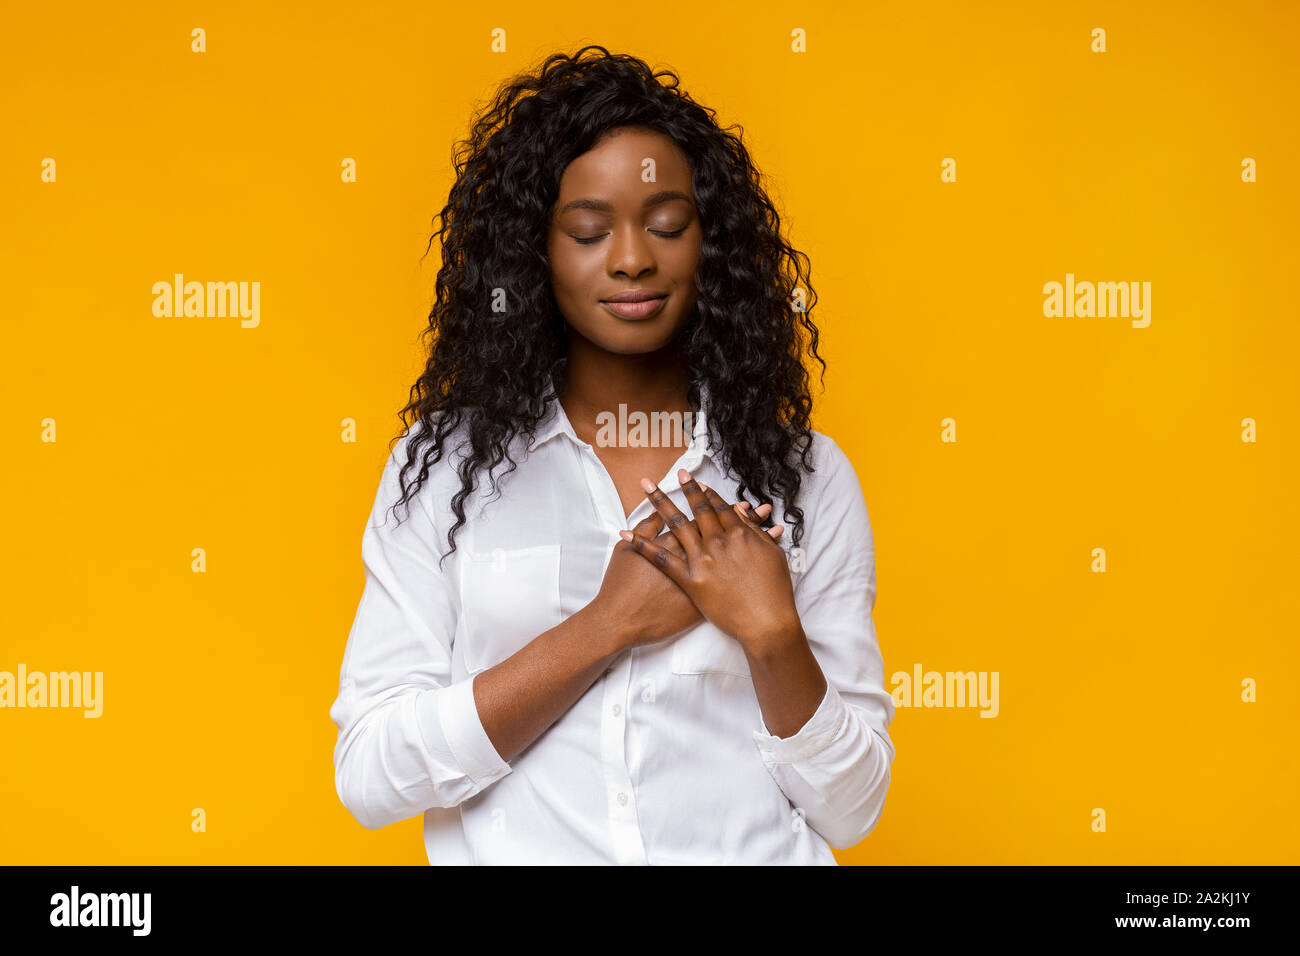 Agradecida mujer afro colocando las manos sobre su corazón Foto de stock